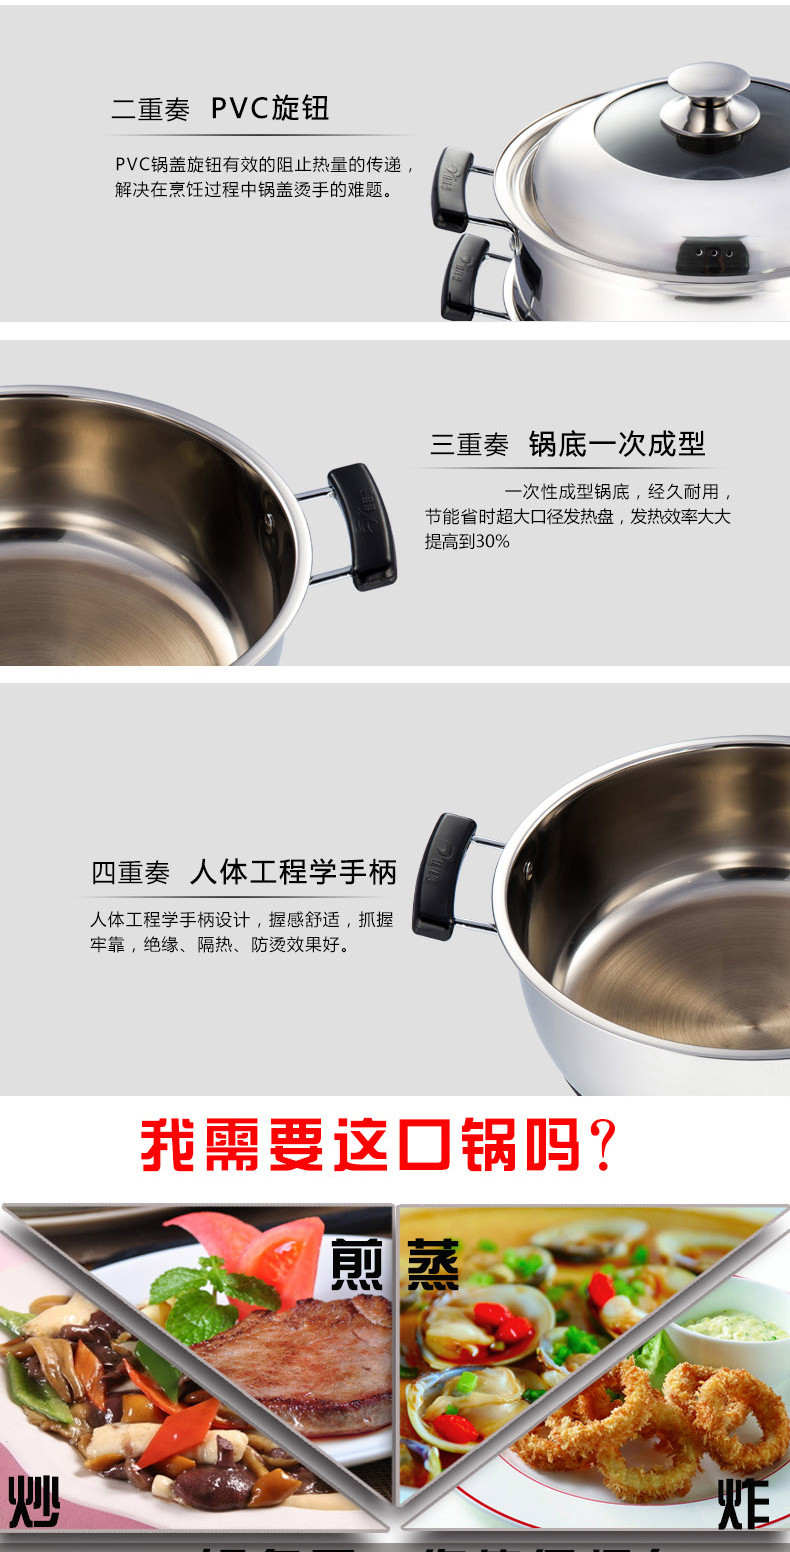 佳佳恋多功能双格电热锅30CM  JJLDG-30 4.5L 食品级不锈钢材质中国质造烧水壶食品级